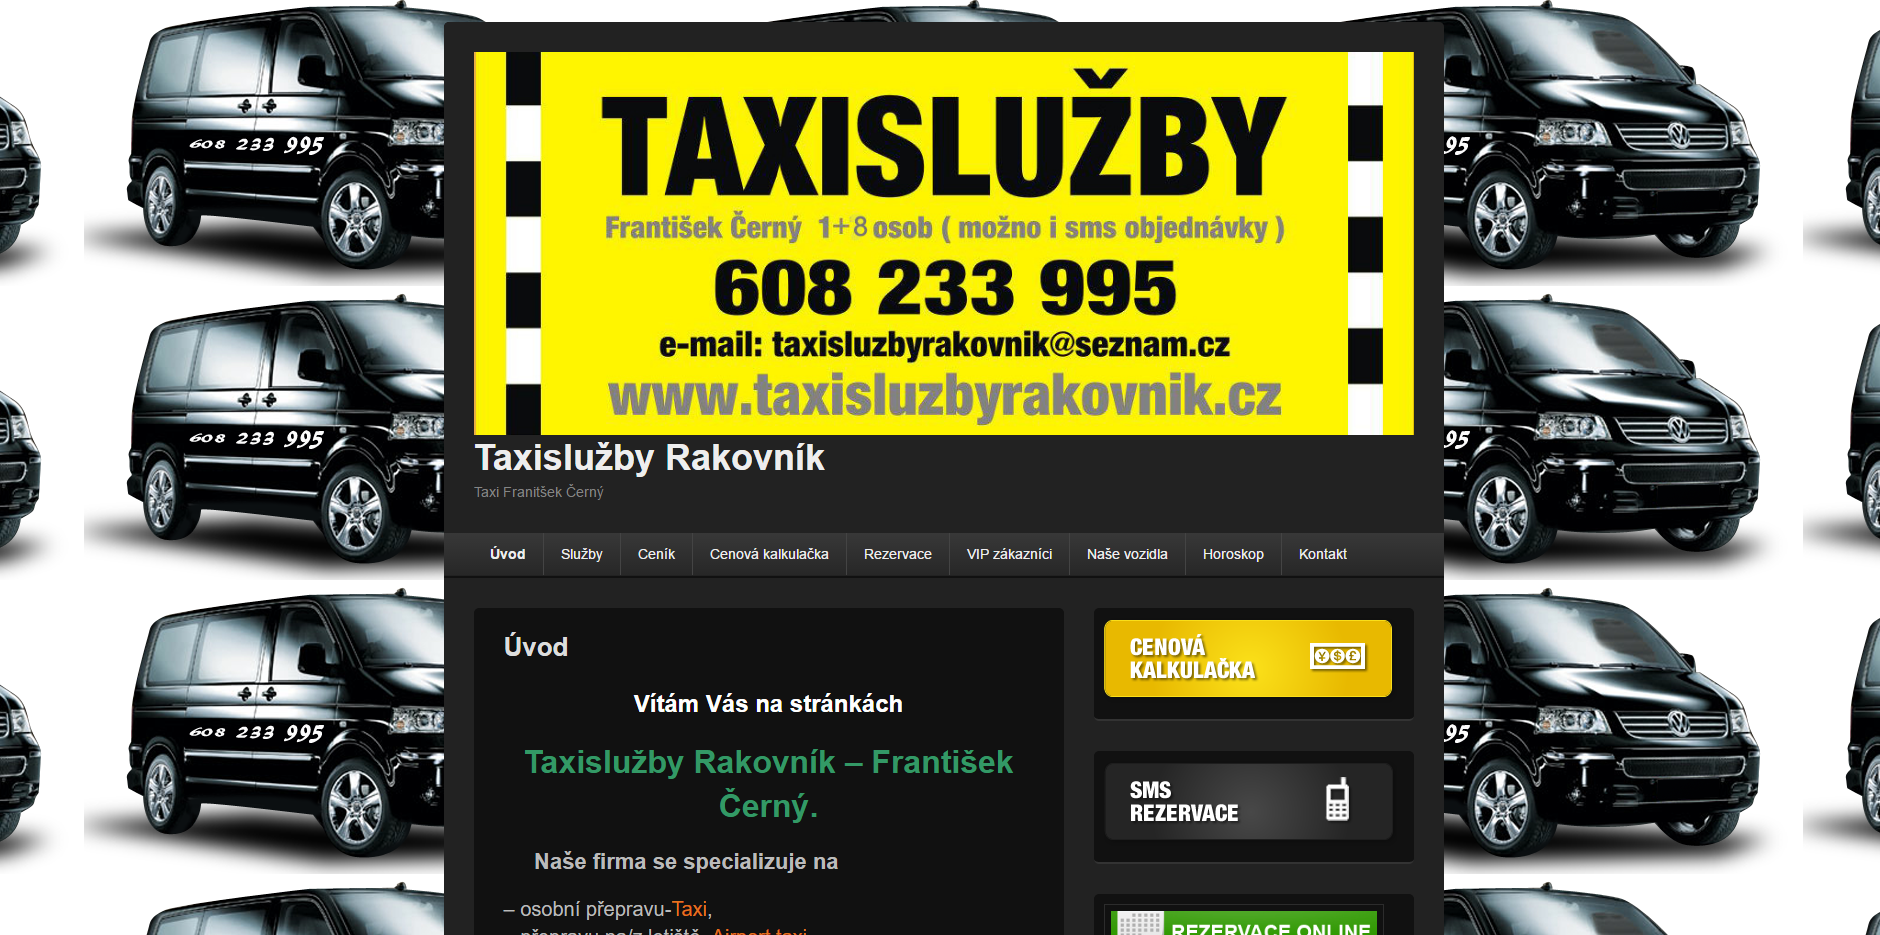 Taxislužby Rakovnik